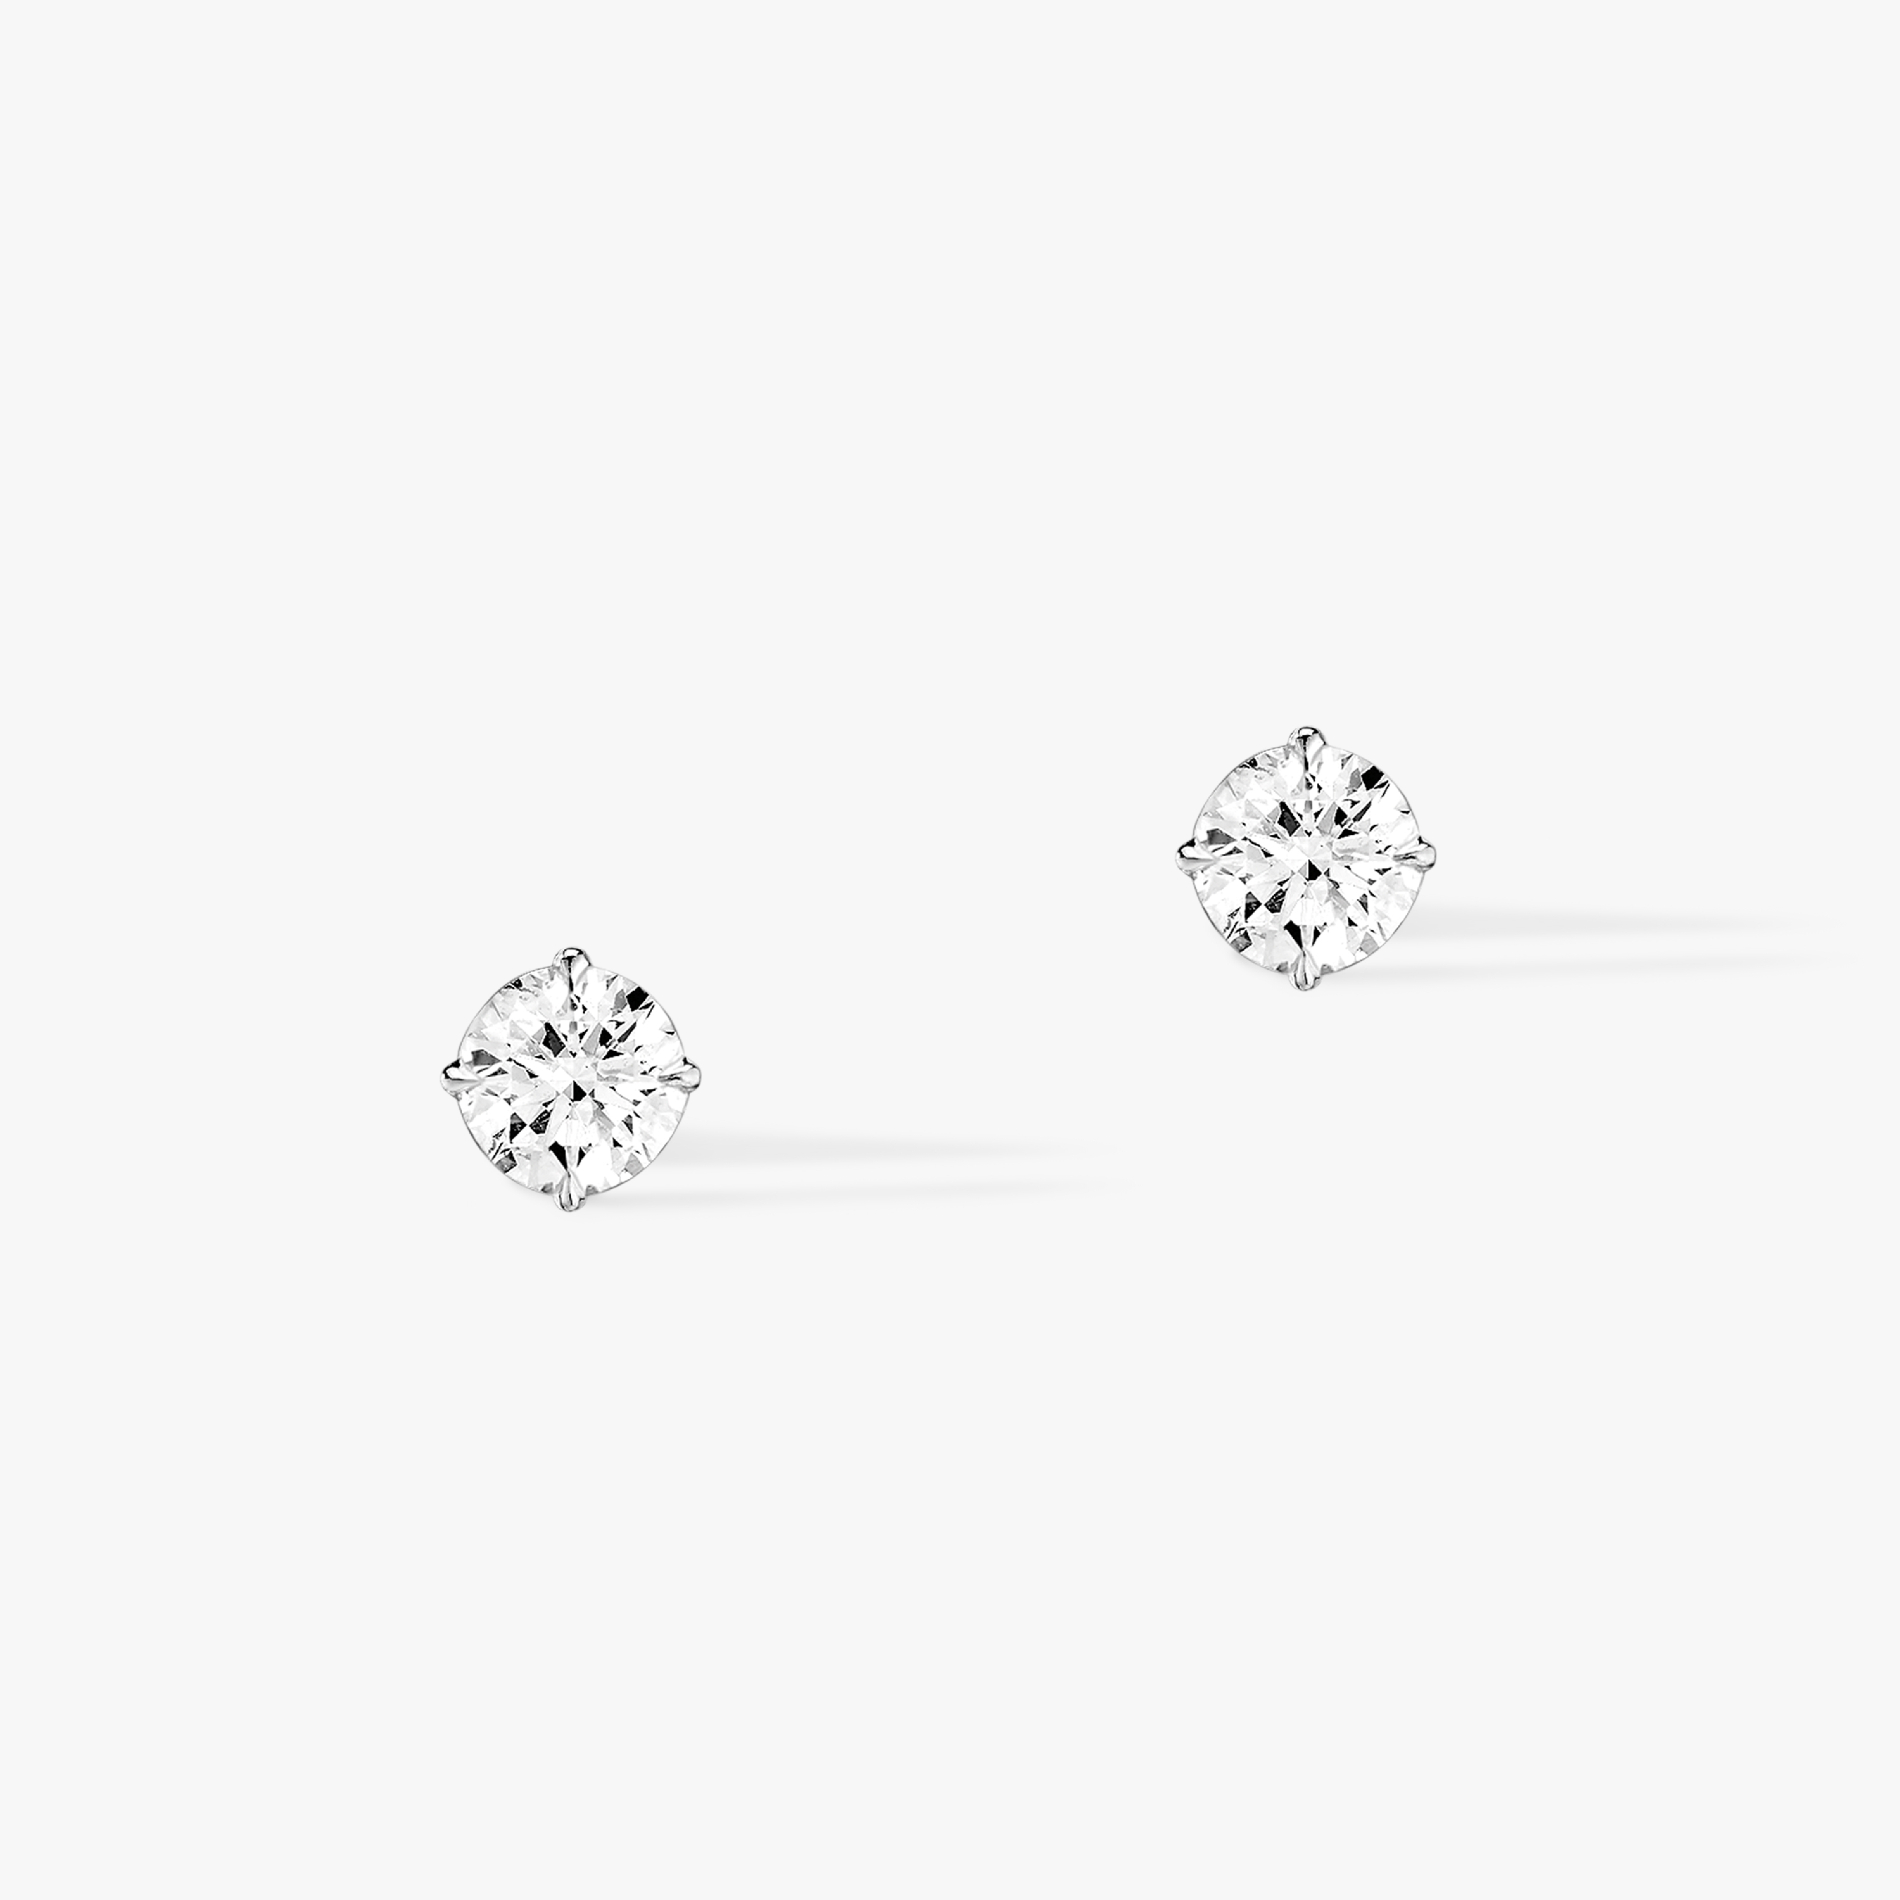 Boucles d'oreilles Femme Or Blanc Diamant Puces Brillant 08630-WG